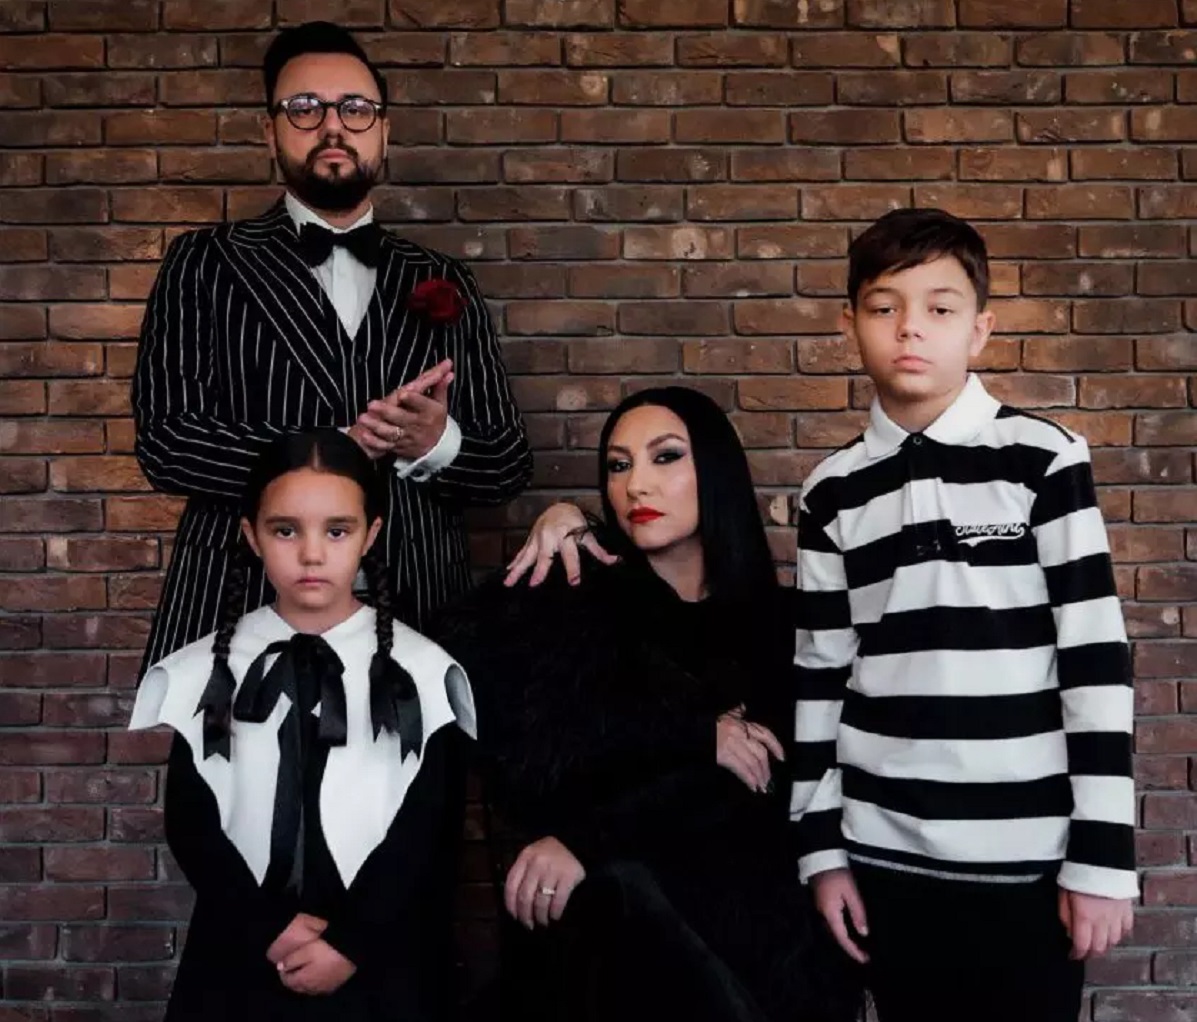 Imagini cu familia Măruță care au strâns zeci de mii de aprecieri pe internet. Cum s-au deghizat de Halloween